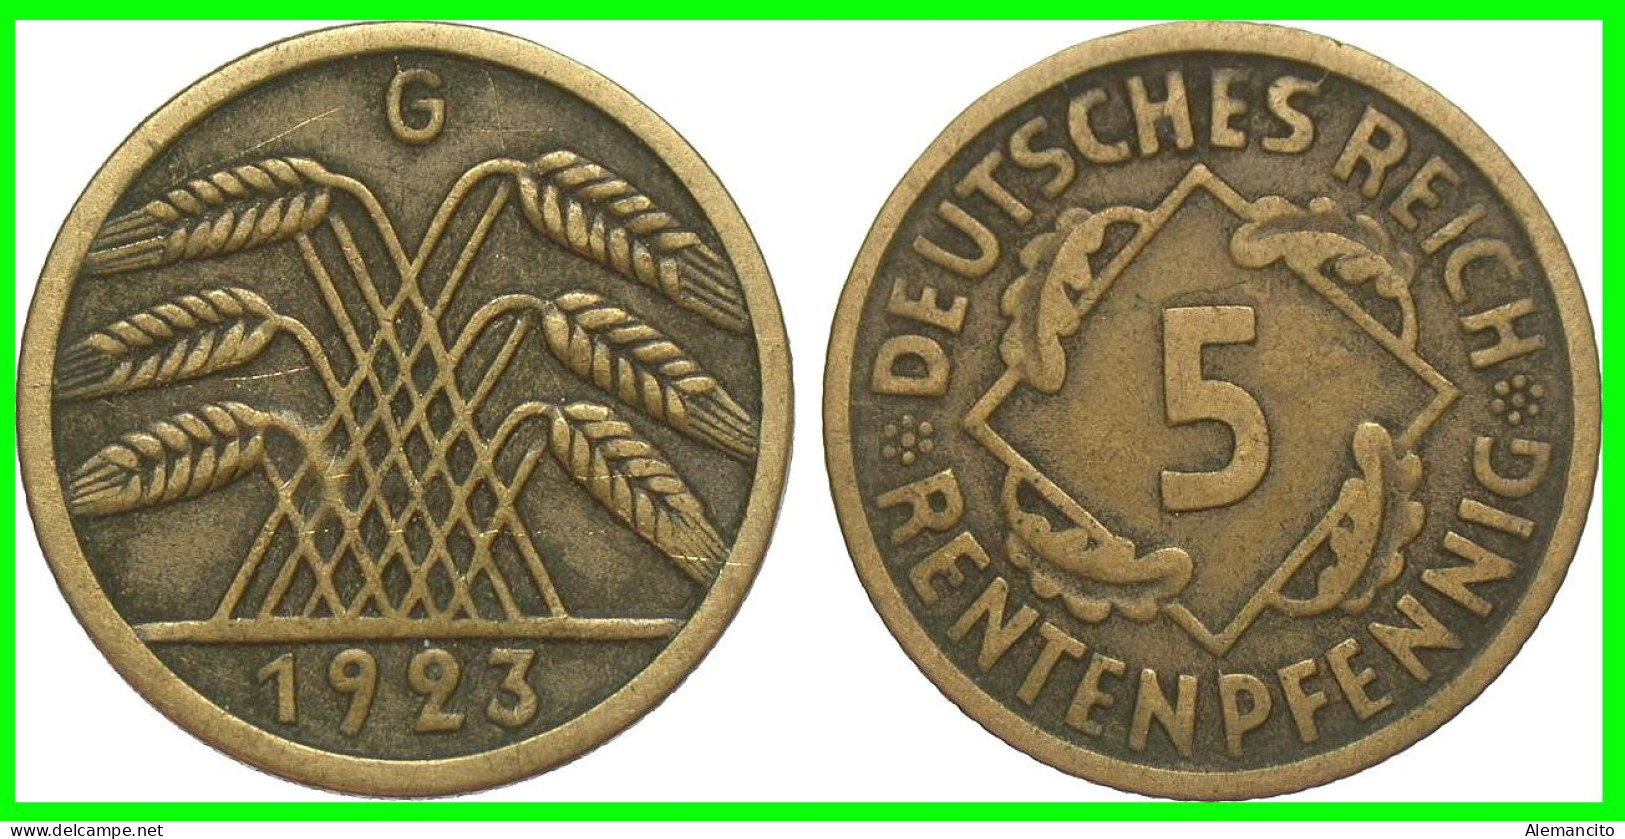 GERMANY REPÚBLICA DE WEIMAR 5 PFENNIG DE PENSIÓN (1923 CECA-G) MONEDA DEL AÑO 1923-1925 (RENTENPFENNIG KM # 32 - 5 Rentenpfennig & 5 Reichspfennig